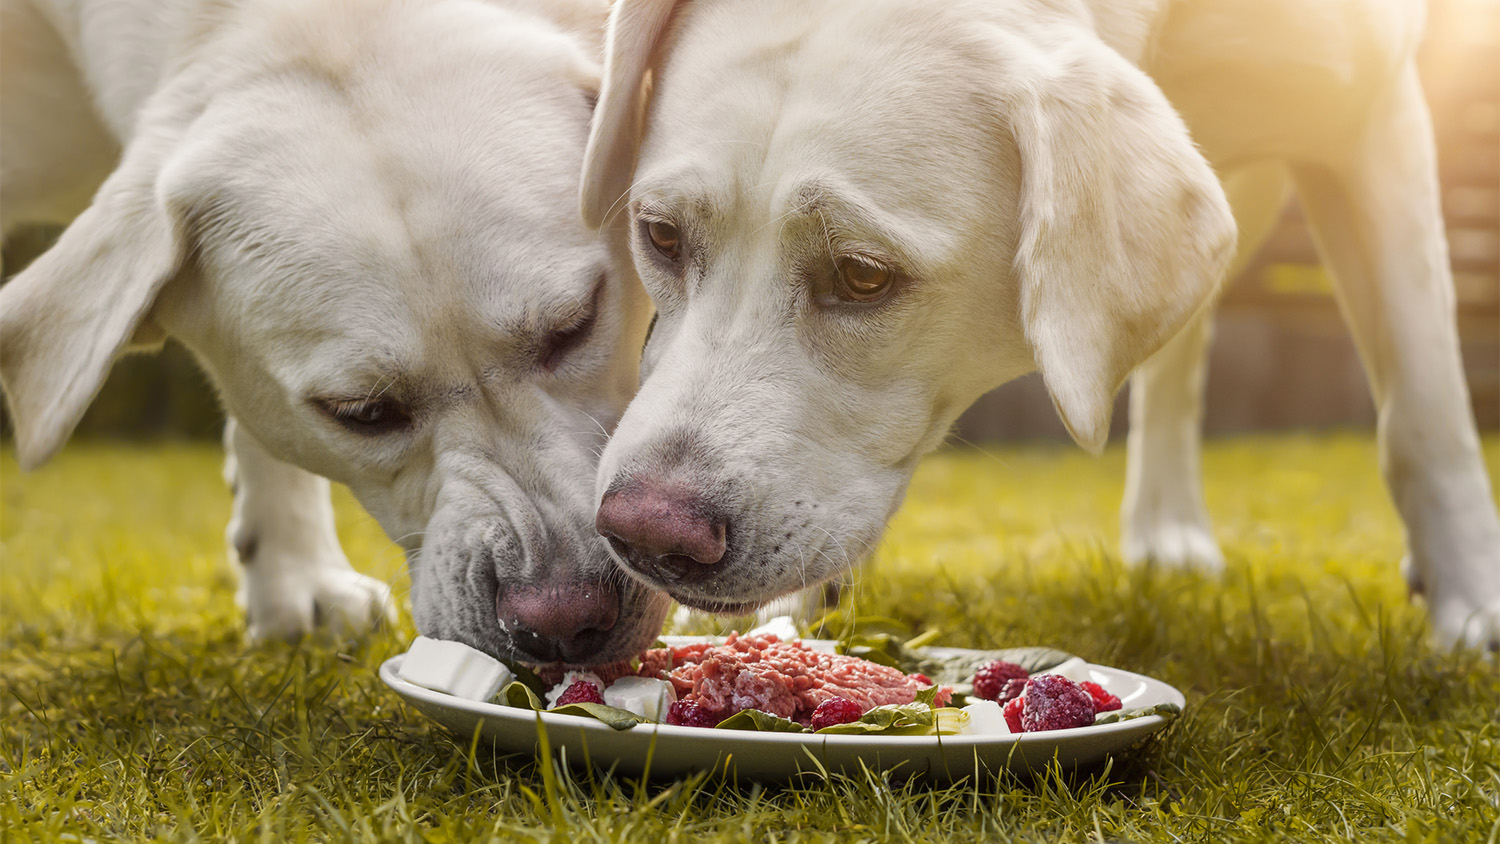 Heute werden fleischfressenden Haustieren, vor allem Hunden, zunehmend Portionen aus rohem Fleisch, Schlachtnebenprodukten, Knochen und Zutaten wie Gemüse und Obst verfüttert. Ge-nannt wird dieser Futtermix "Barf" (Biologically Appropriate Raw Food).